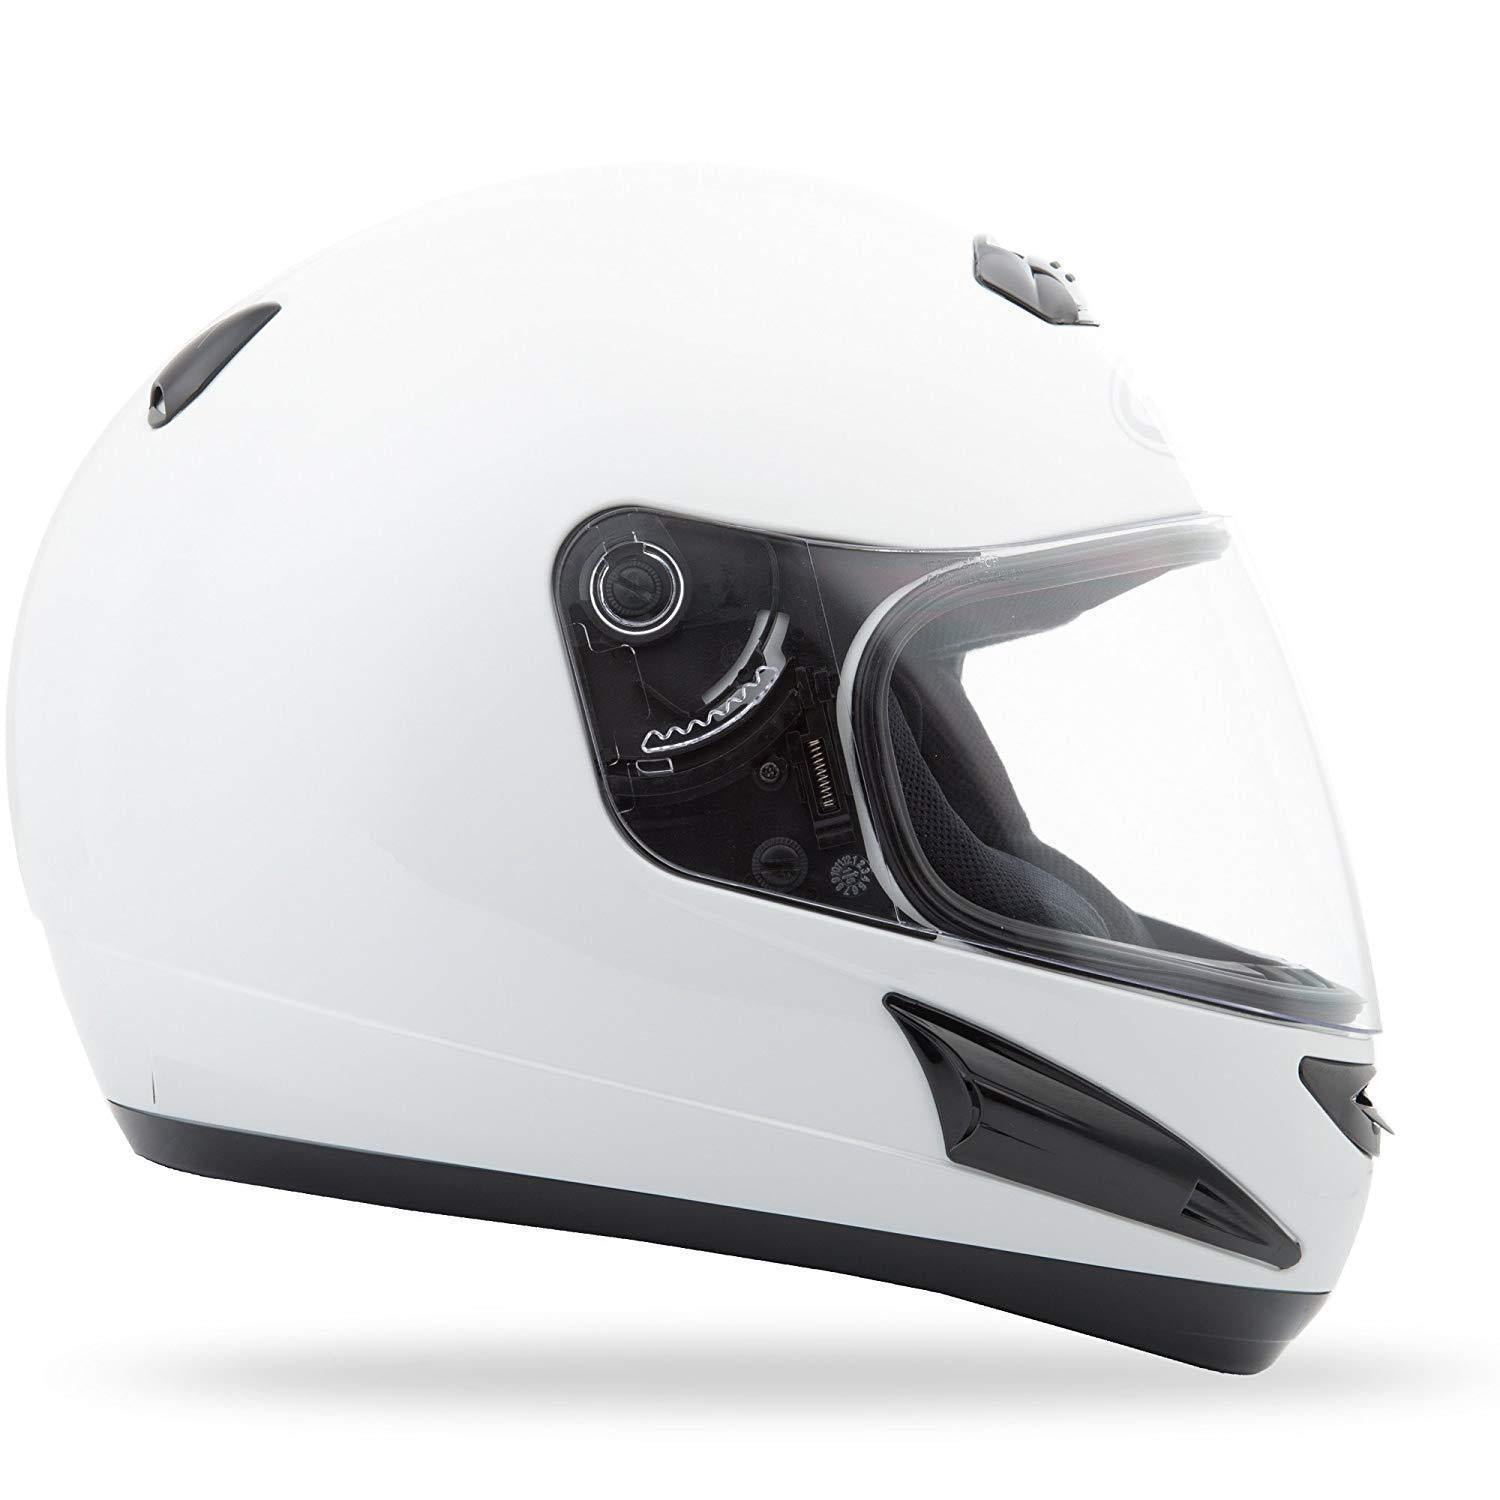 GMax GM38 White Full Face Street Helmet